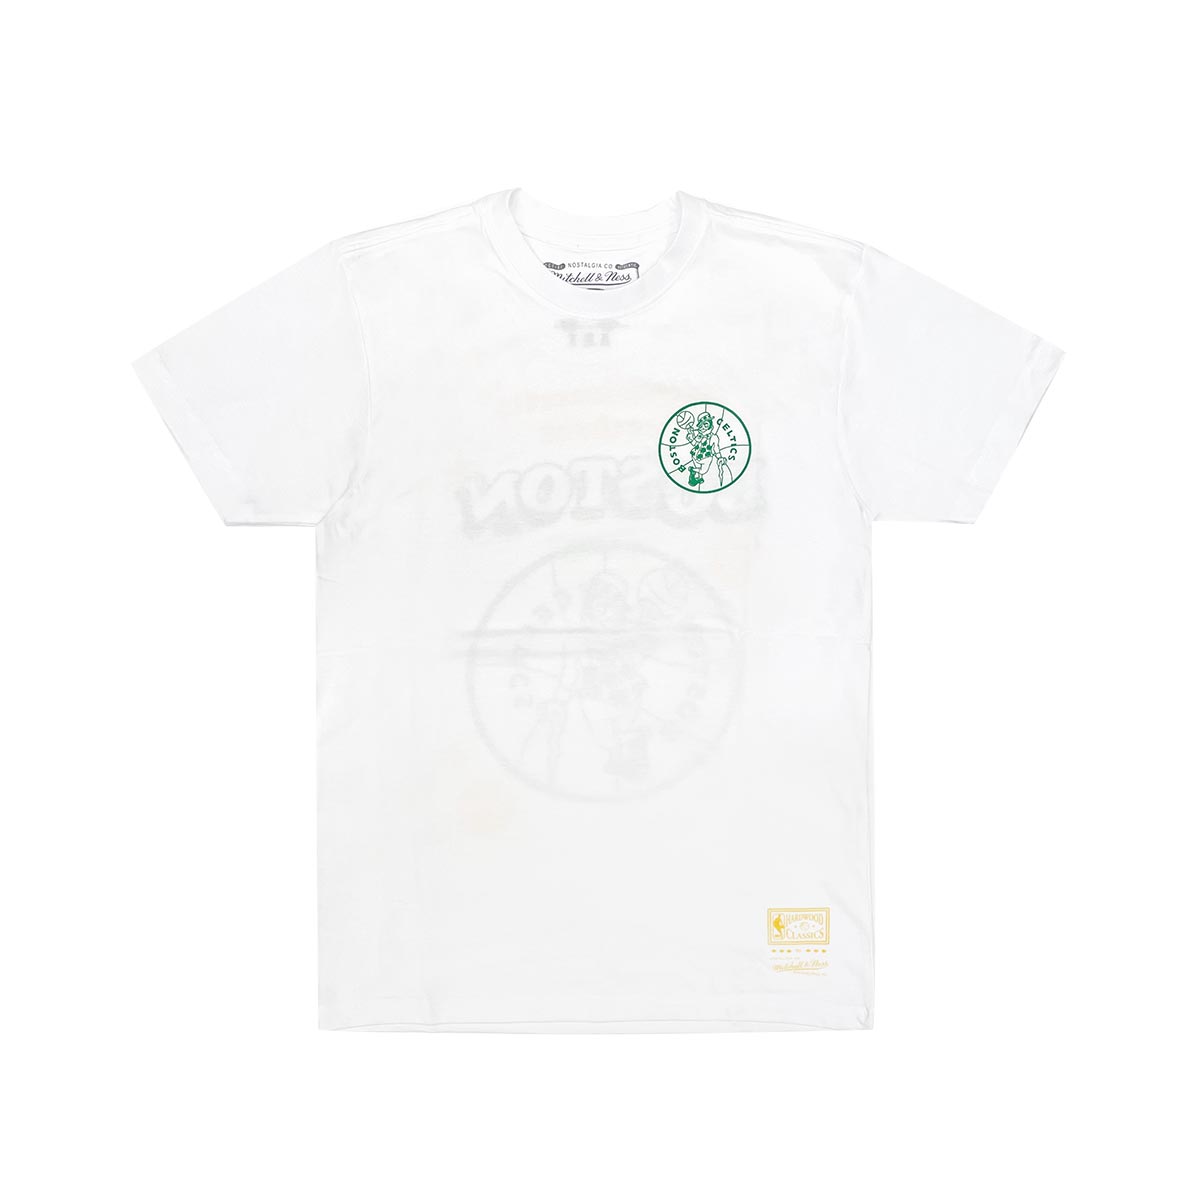 Merch Take Out T-Shirt - Celtics